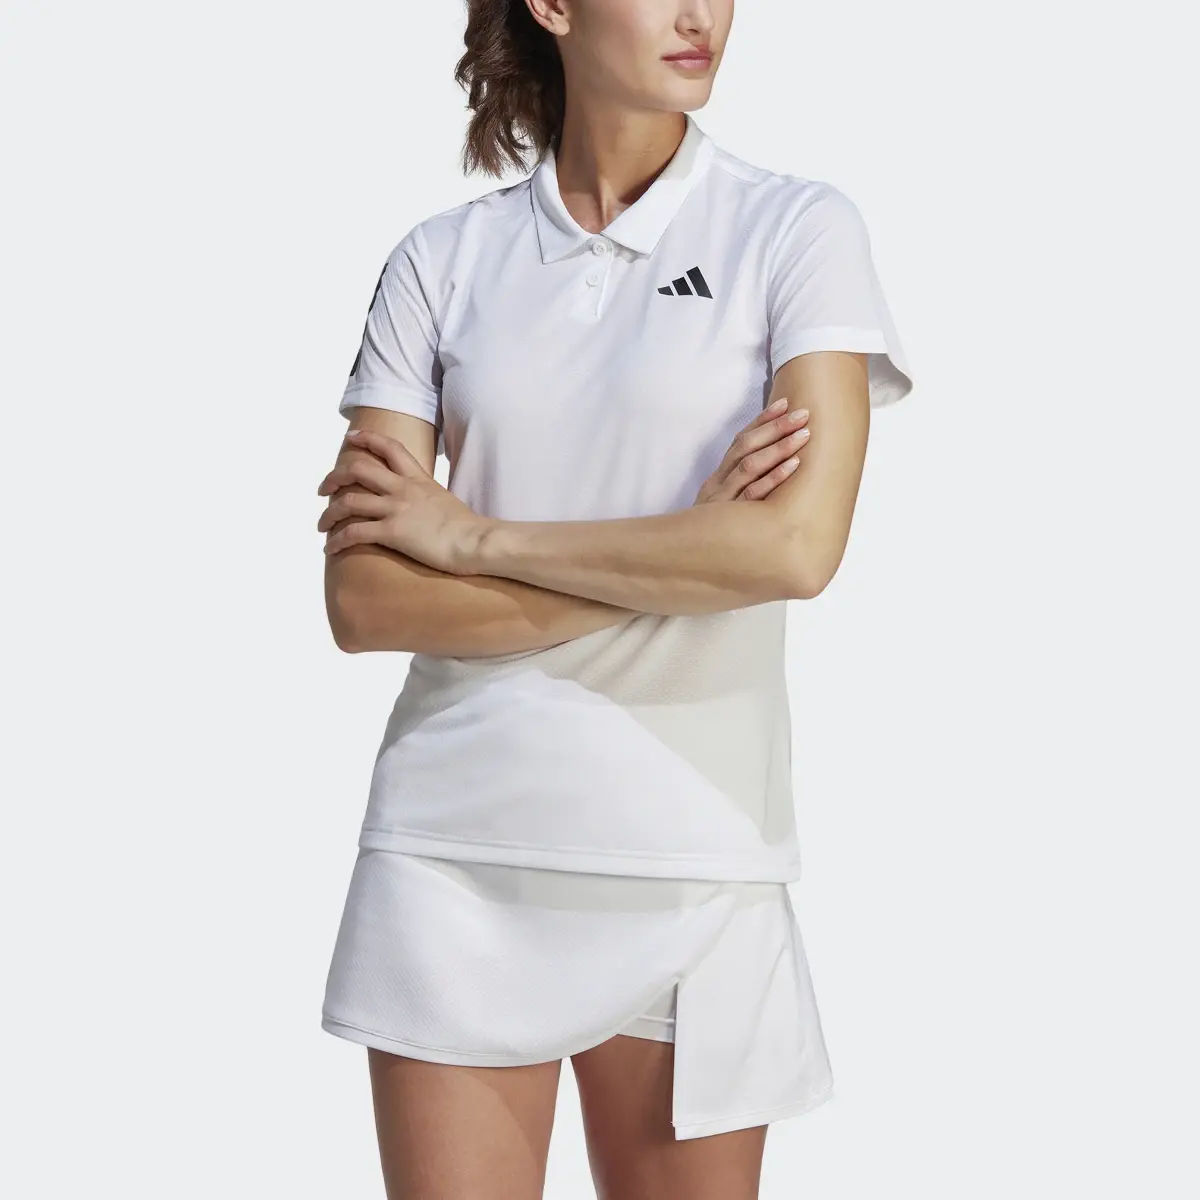 Adidas Club Tennis Polo Shirt. 1